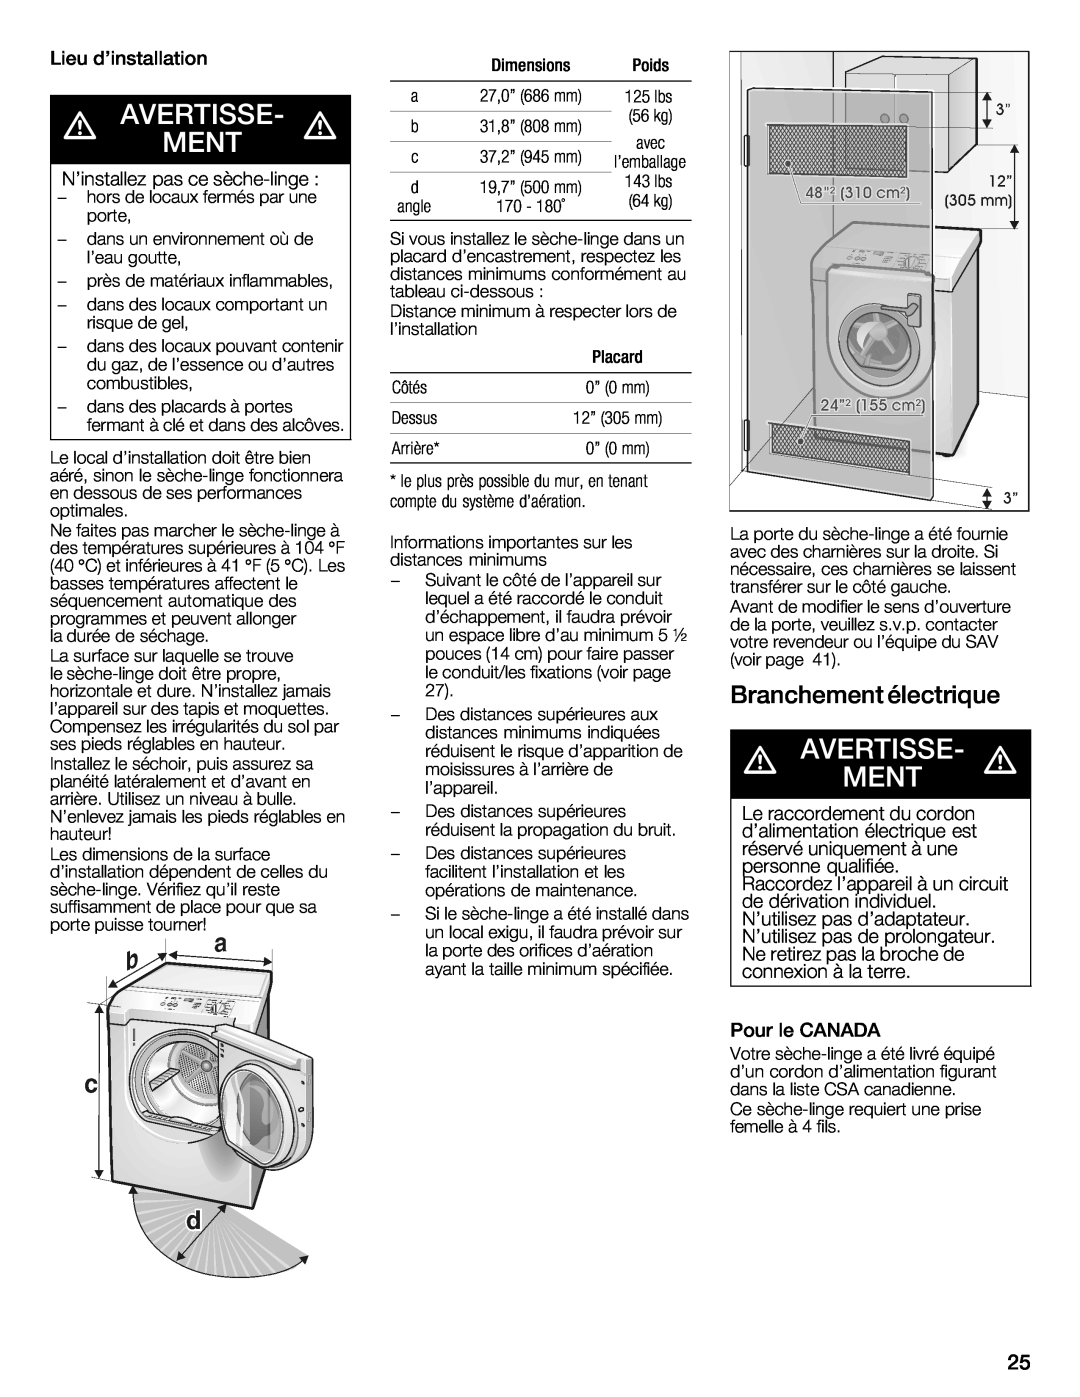 Bosch Appliances WTXD5321CN, WTXD5321US installation instructions d AVERTISSEW, Ment, AVERTISSEW d, Branchement, électrique 